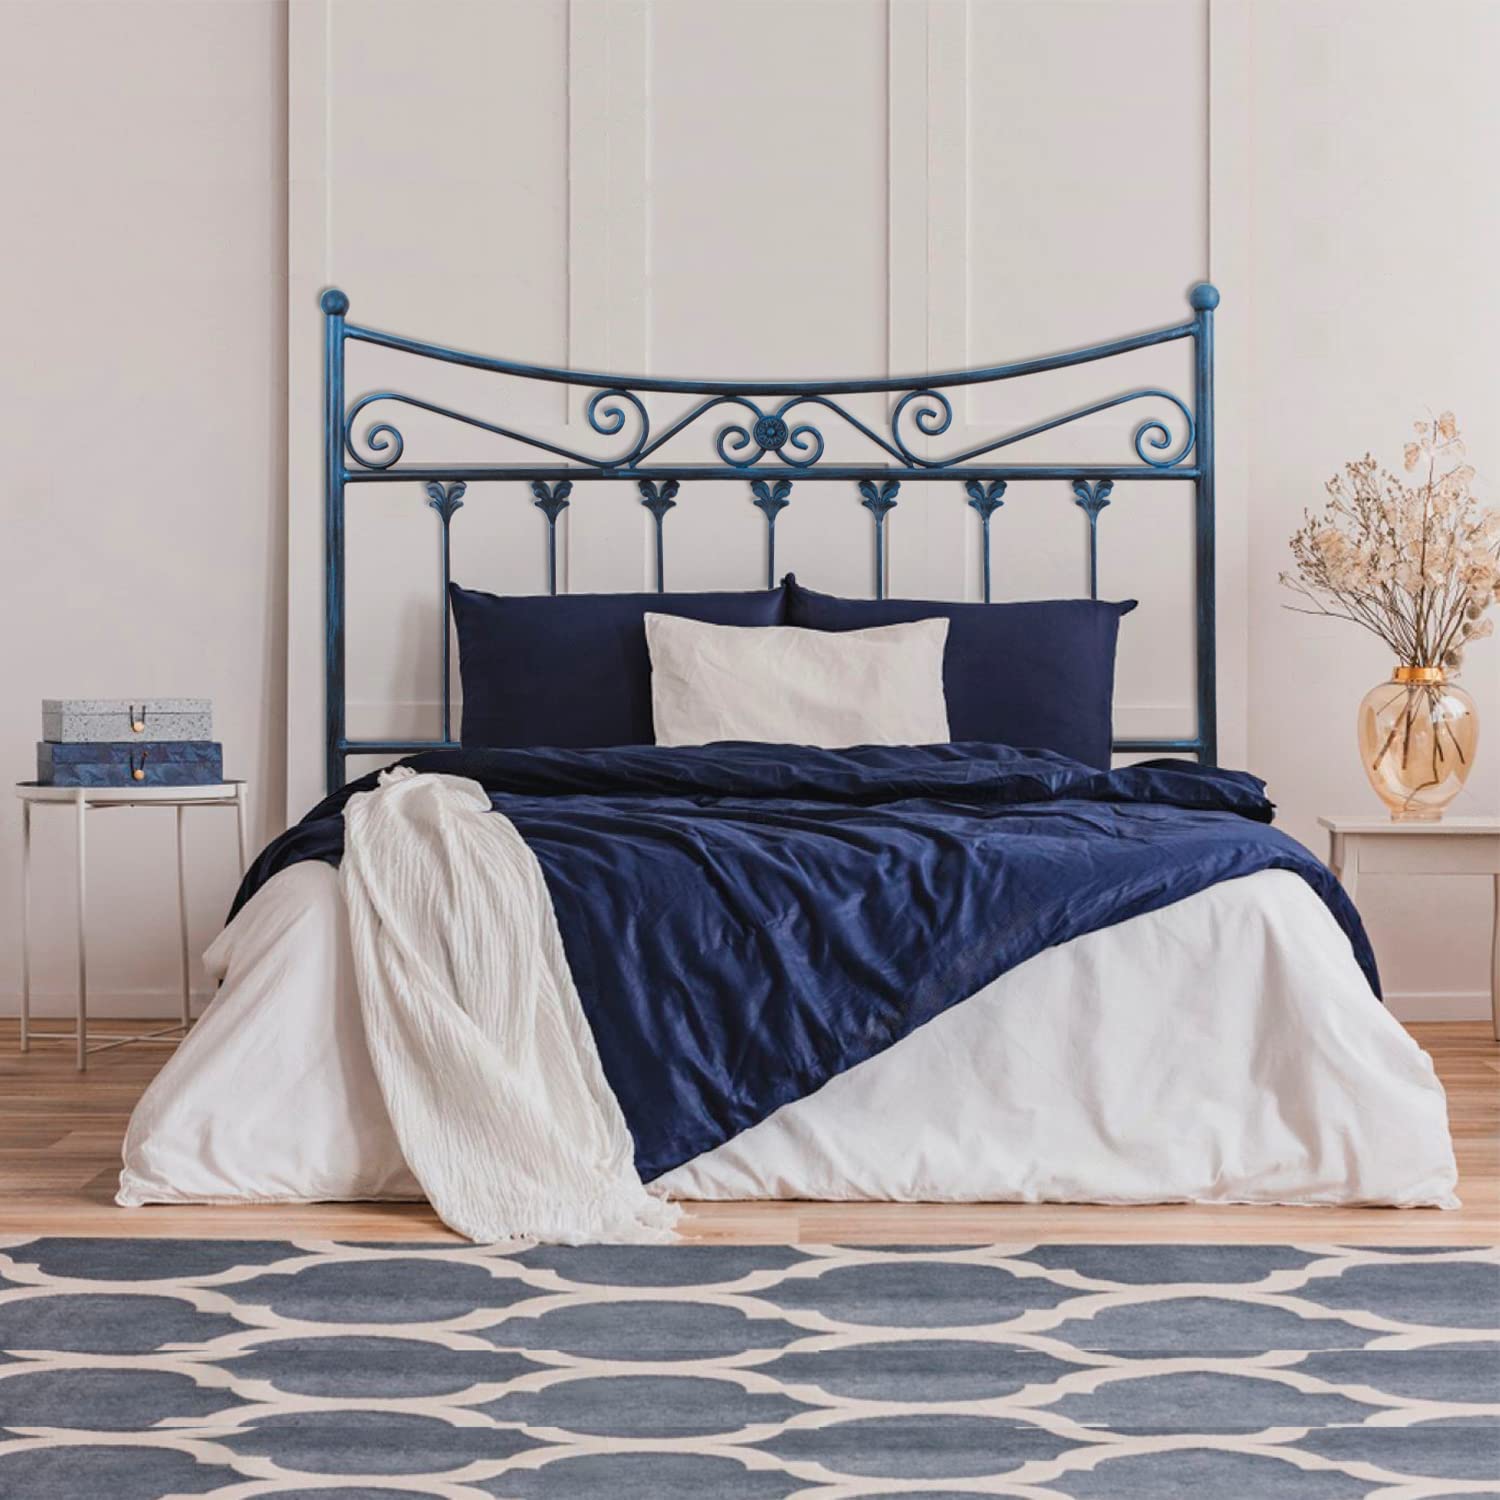 Cabecero de forja Córdoba, color Negro Azul Cabezal para cama de 150 cm,  Cama Matrimonio (155 cm x 125 )